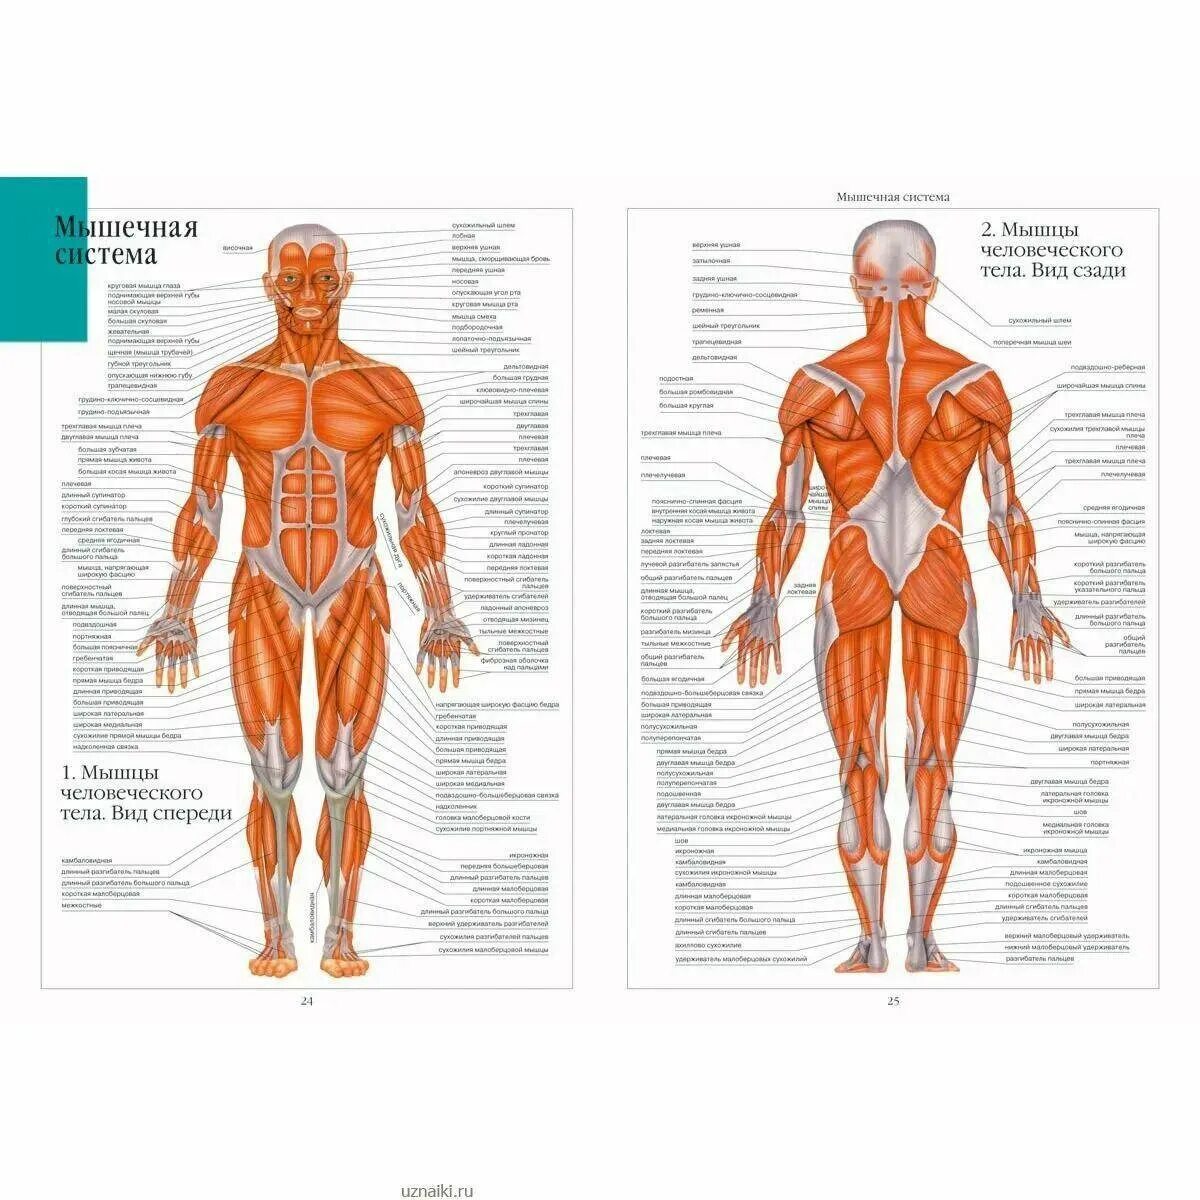 Анатомия картинки. Анатомический атлас мышц человека. Строение человека мужчины спереди. Схема мышц спереди. Мышцы туловища человека анатомия атлас.